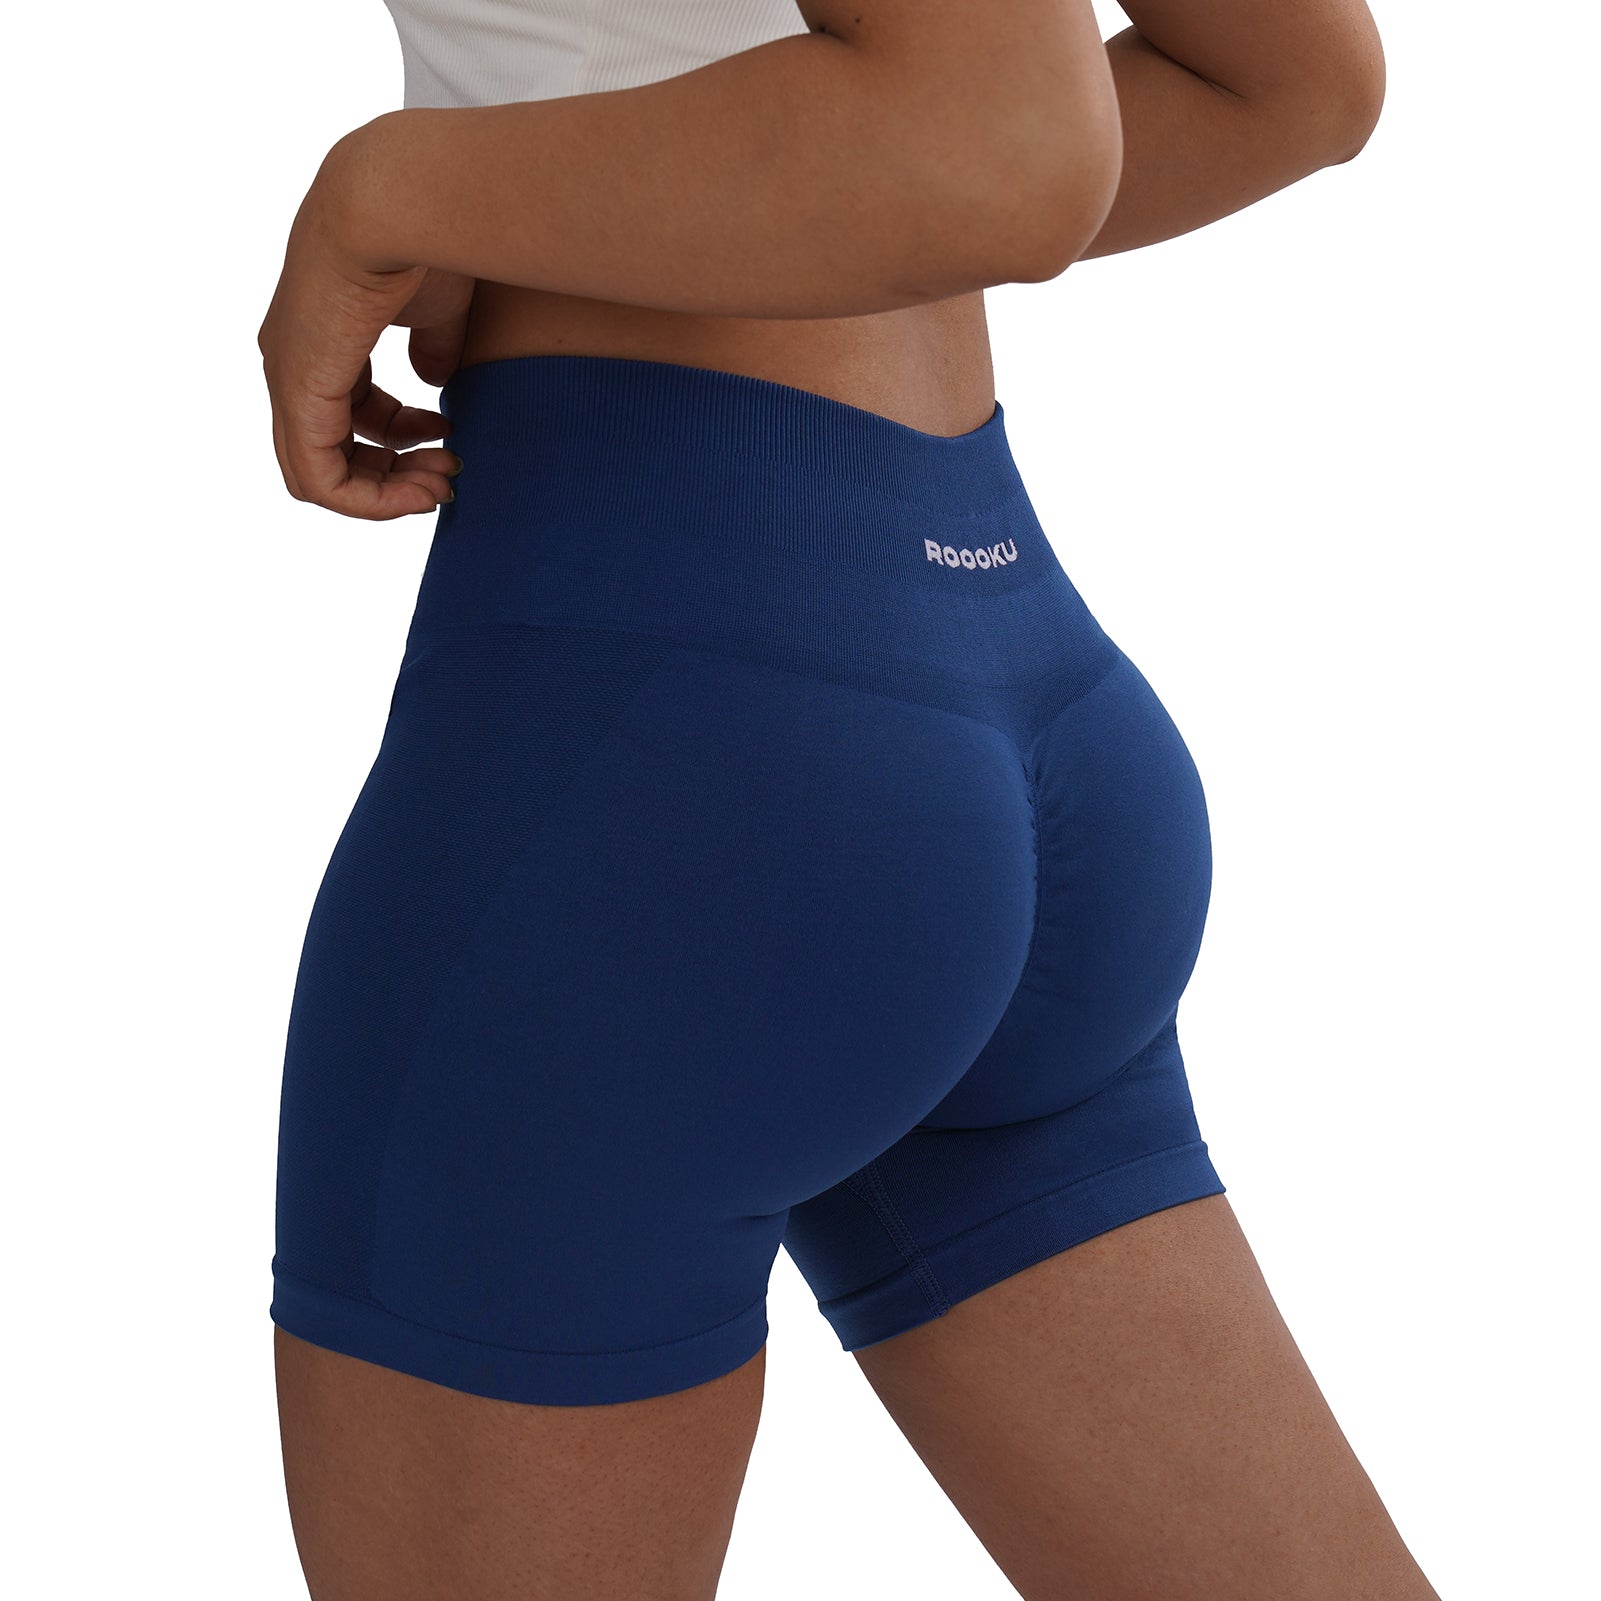 Women's Seamless Workout Shorts  Butt-lifting & High Waist Booty Gym  Shorts